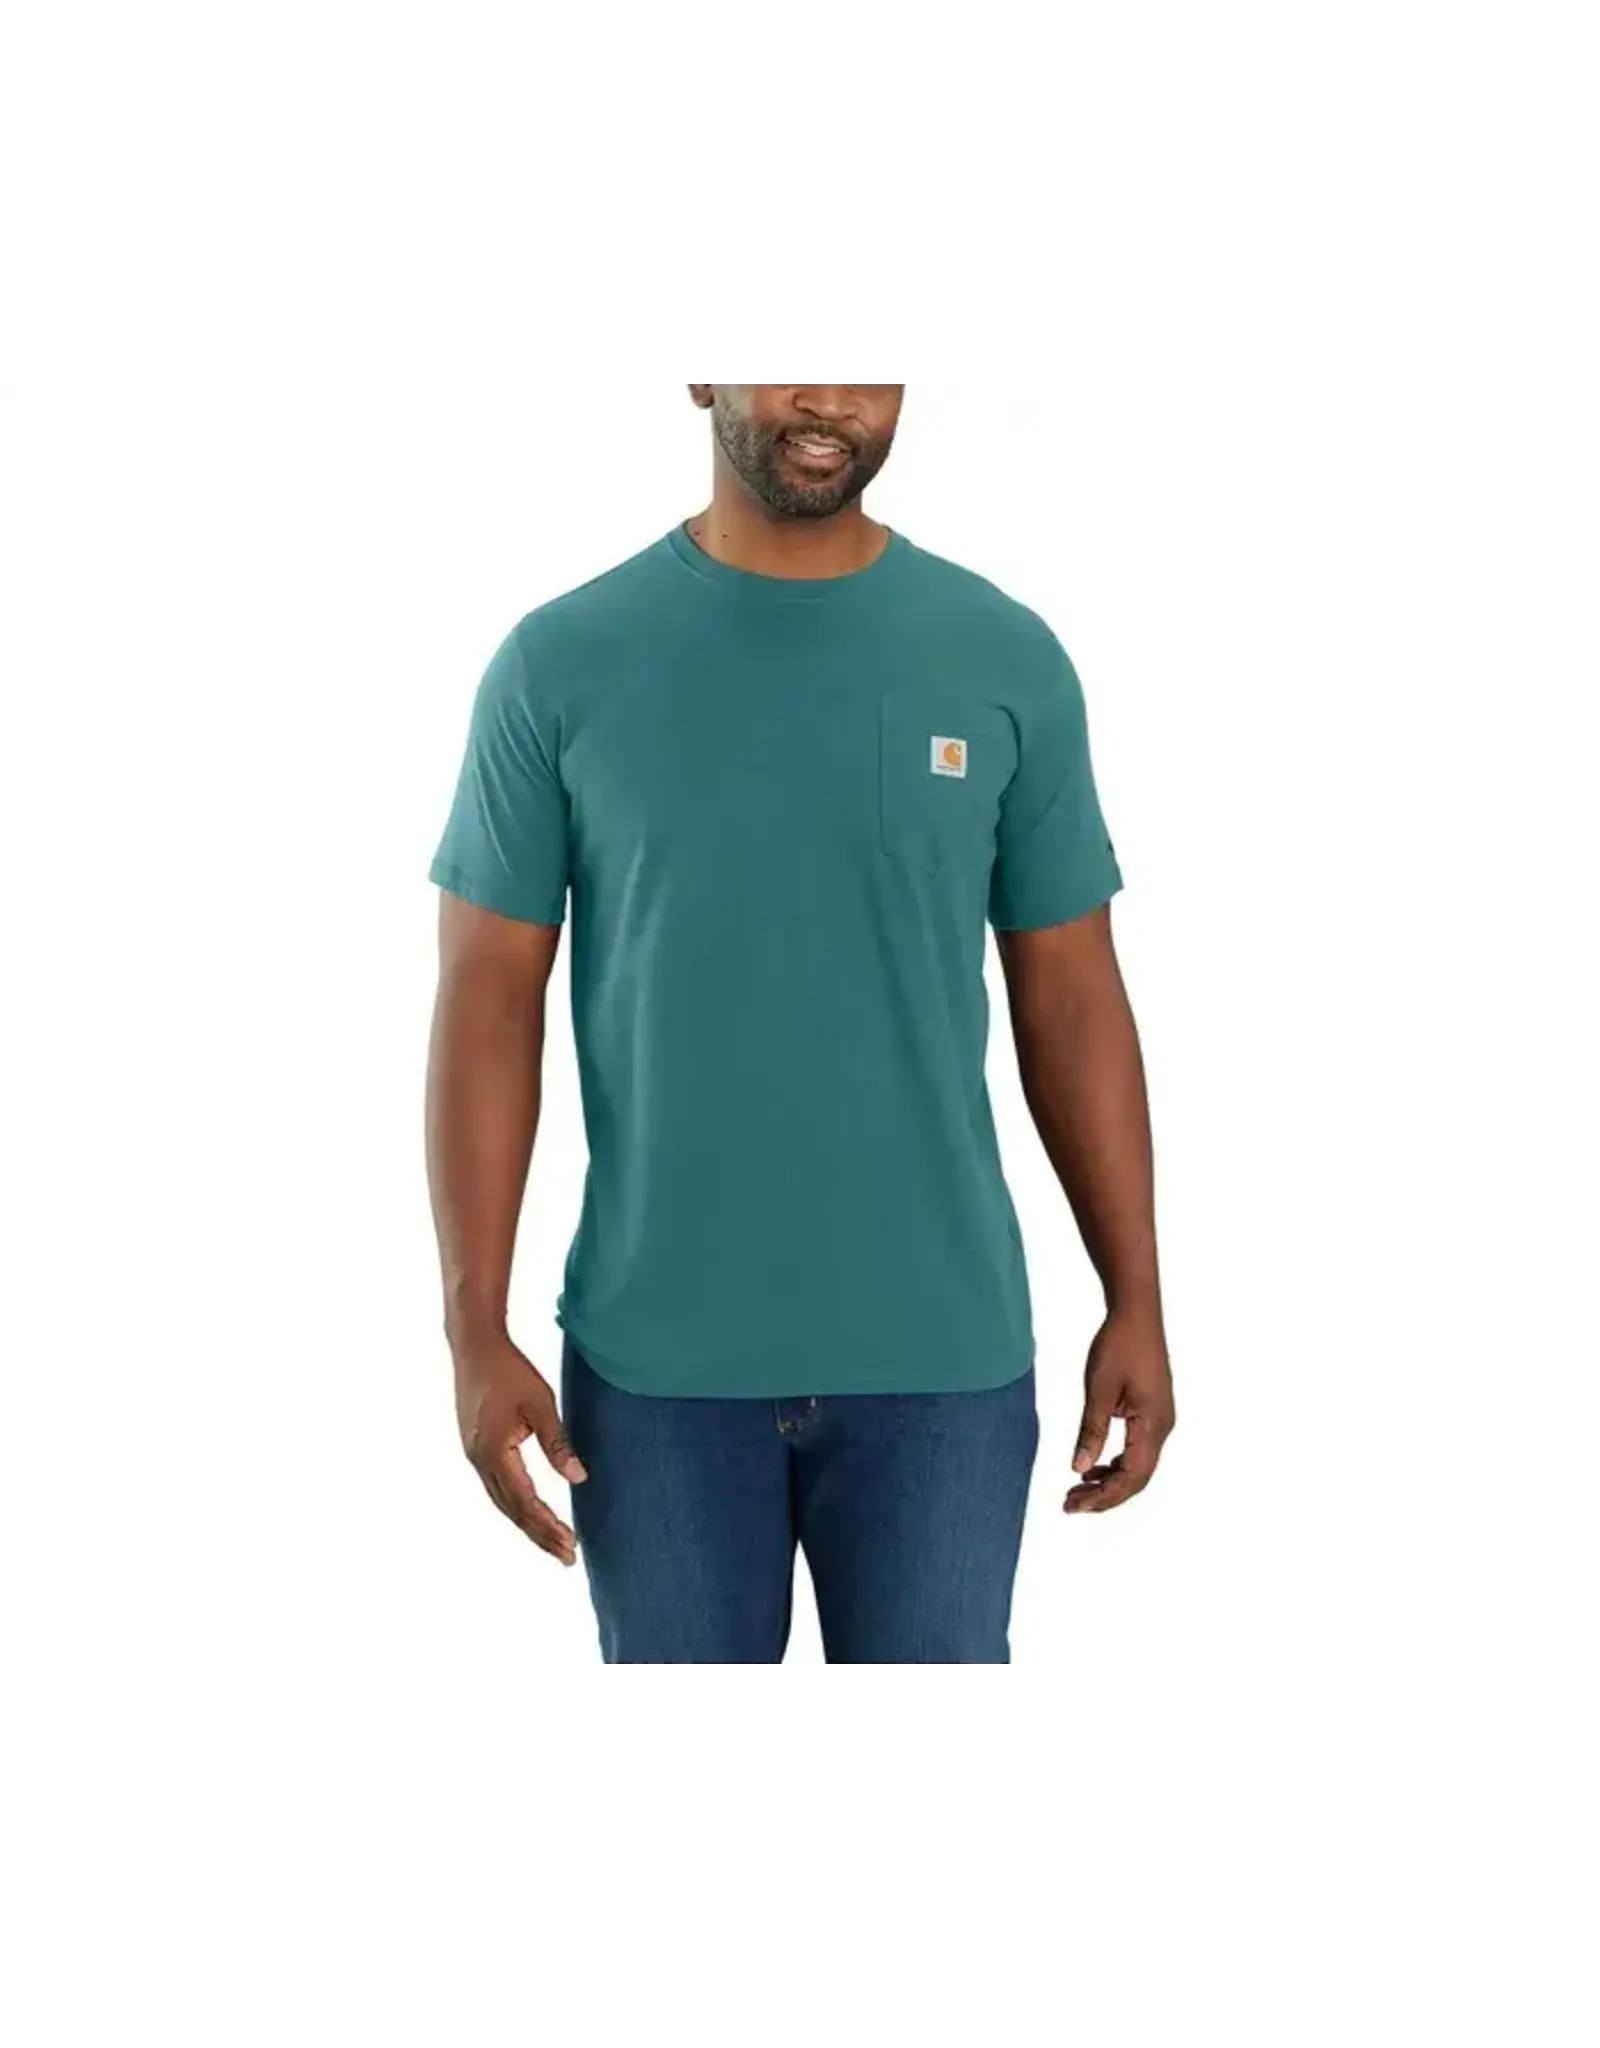 Carhartt Men's Force 104616-GE0 Sea Pine T-Shirt